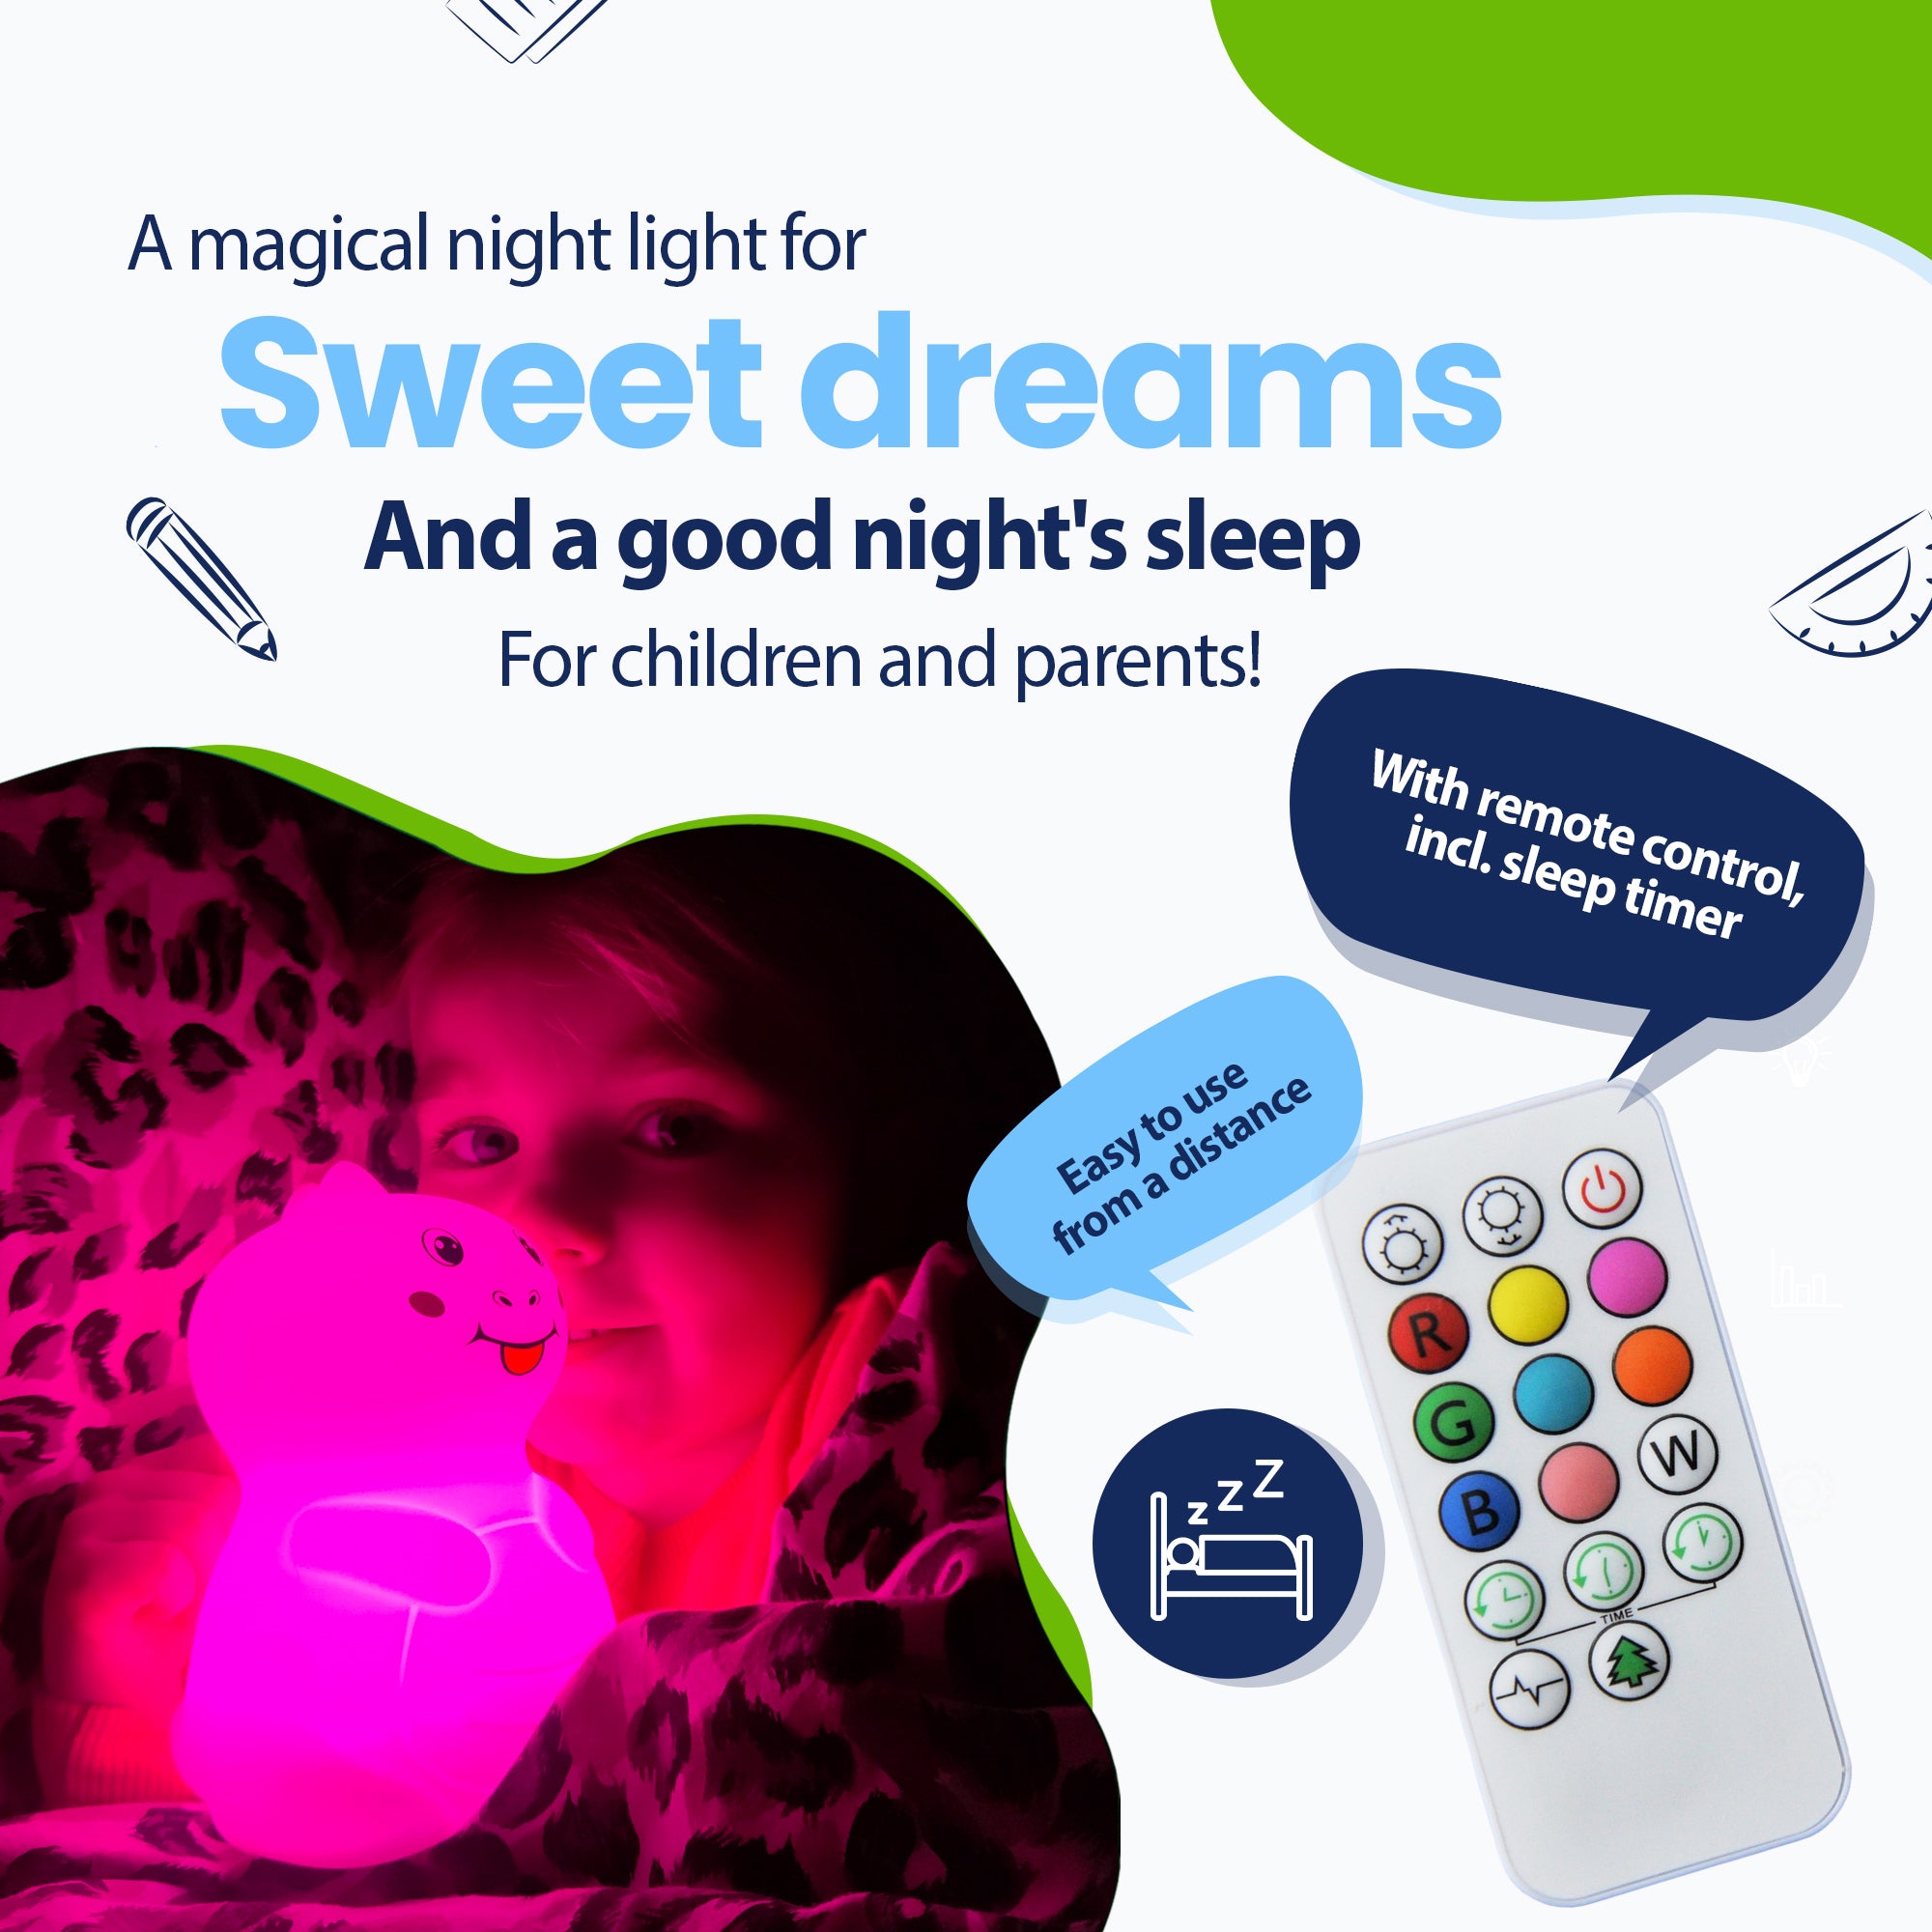 Magiczna lampka nocna zapewniająca przyjemne sny i zdrowy sen dla dzieci i rodziców - z pilotem i wyłącznikiem czasowym - łatwo z daleka